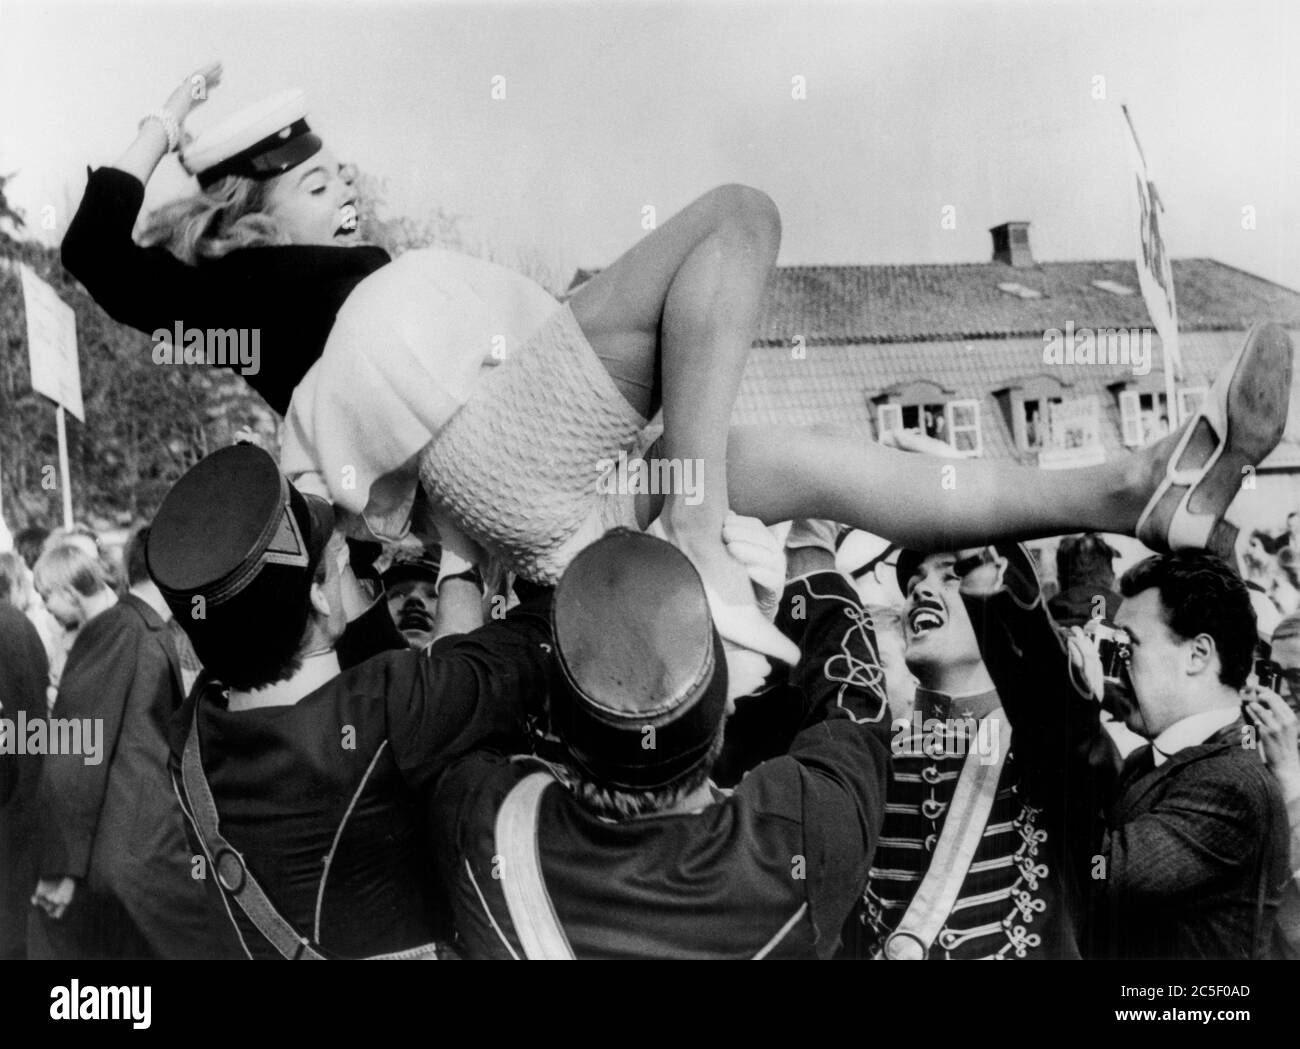 La actriz Pia Degermark se levanta en el aire durante las ceremonias de graduación en el exclusivo Sigtunaskolan, Suecia, UPI, 12 de junio de 1968 Foto de stock